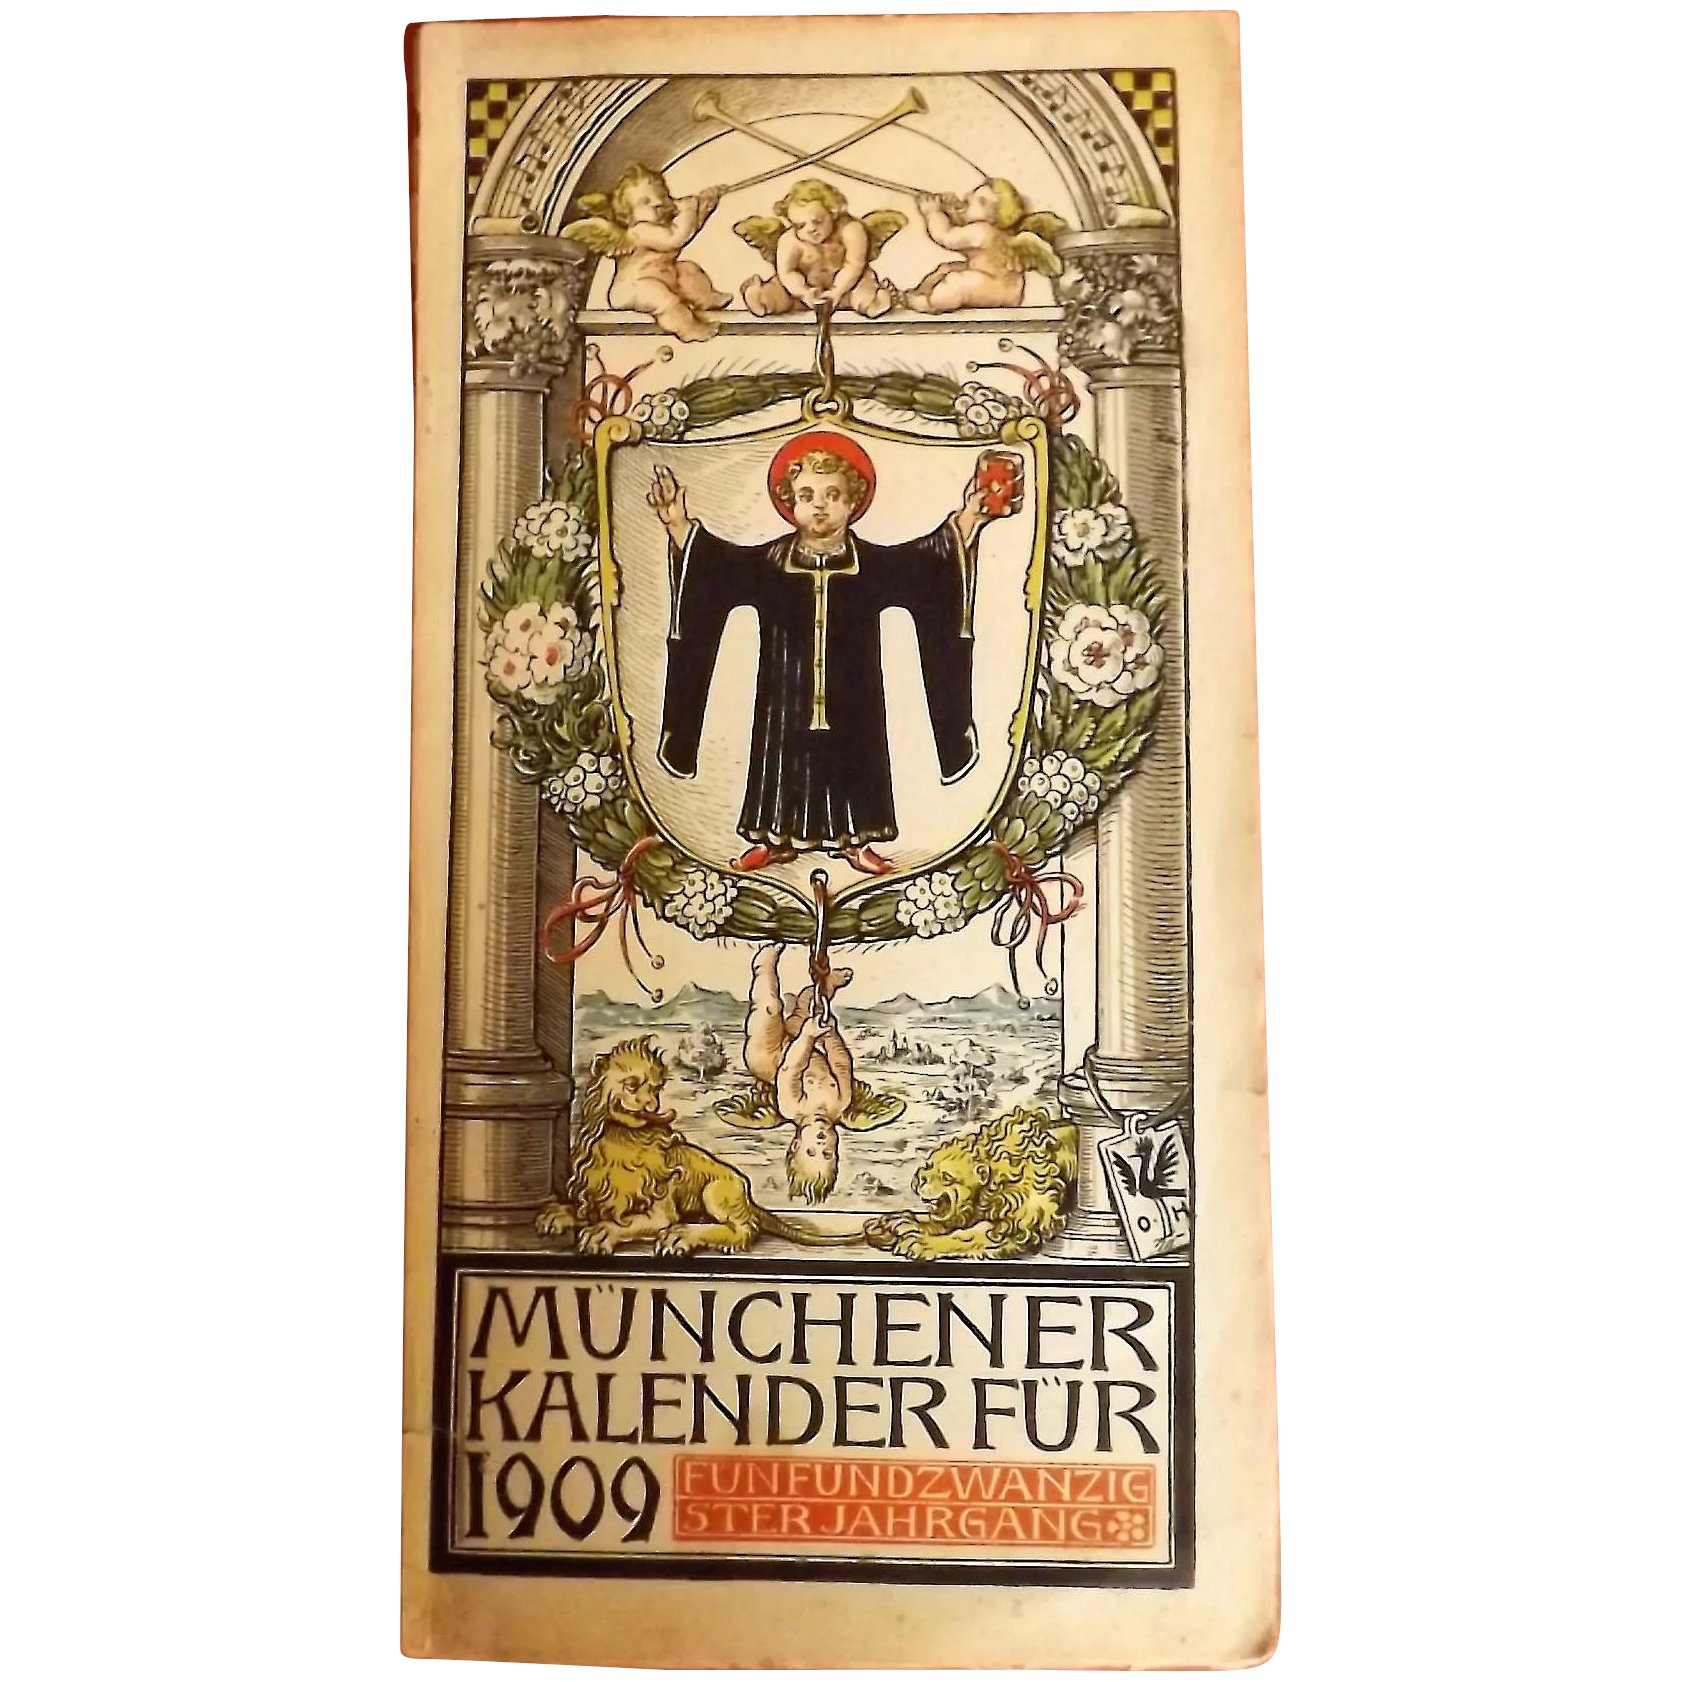 Munchener Kalender Fur 1909